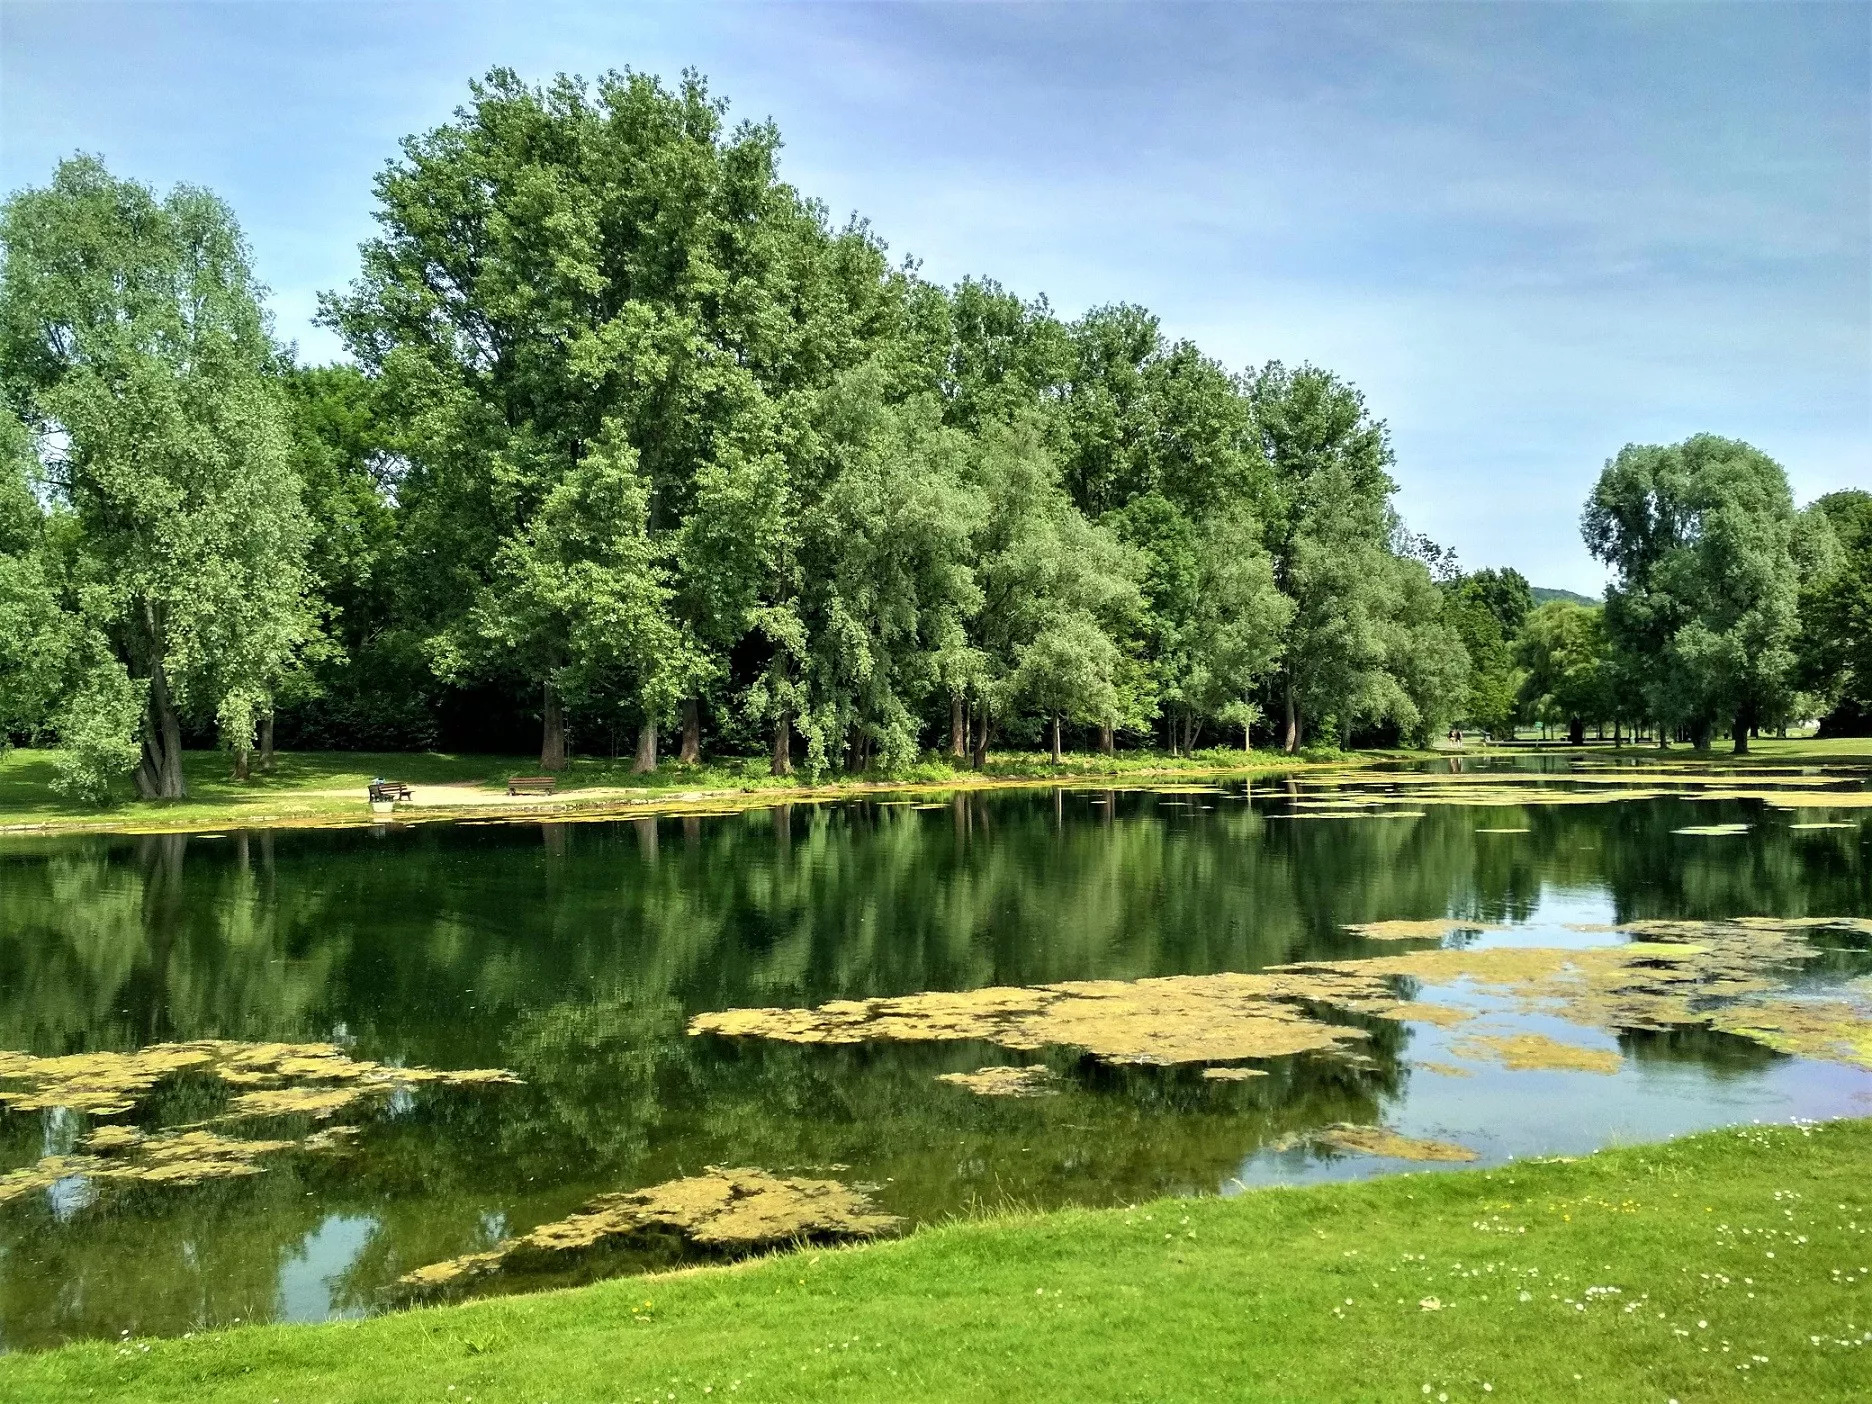 Rheinaue Park in Germany, Europe | Parks - Rated 3.9